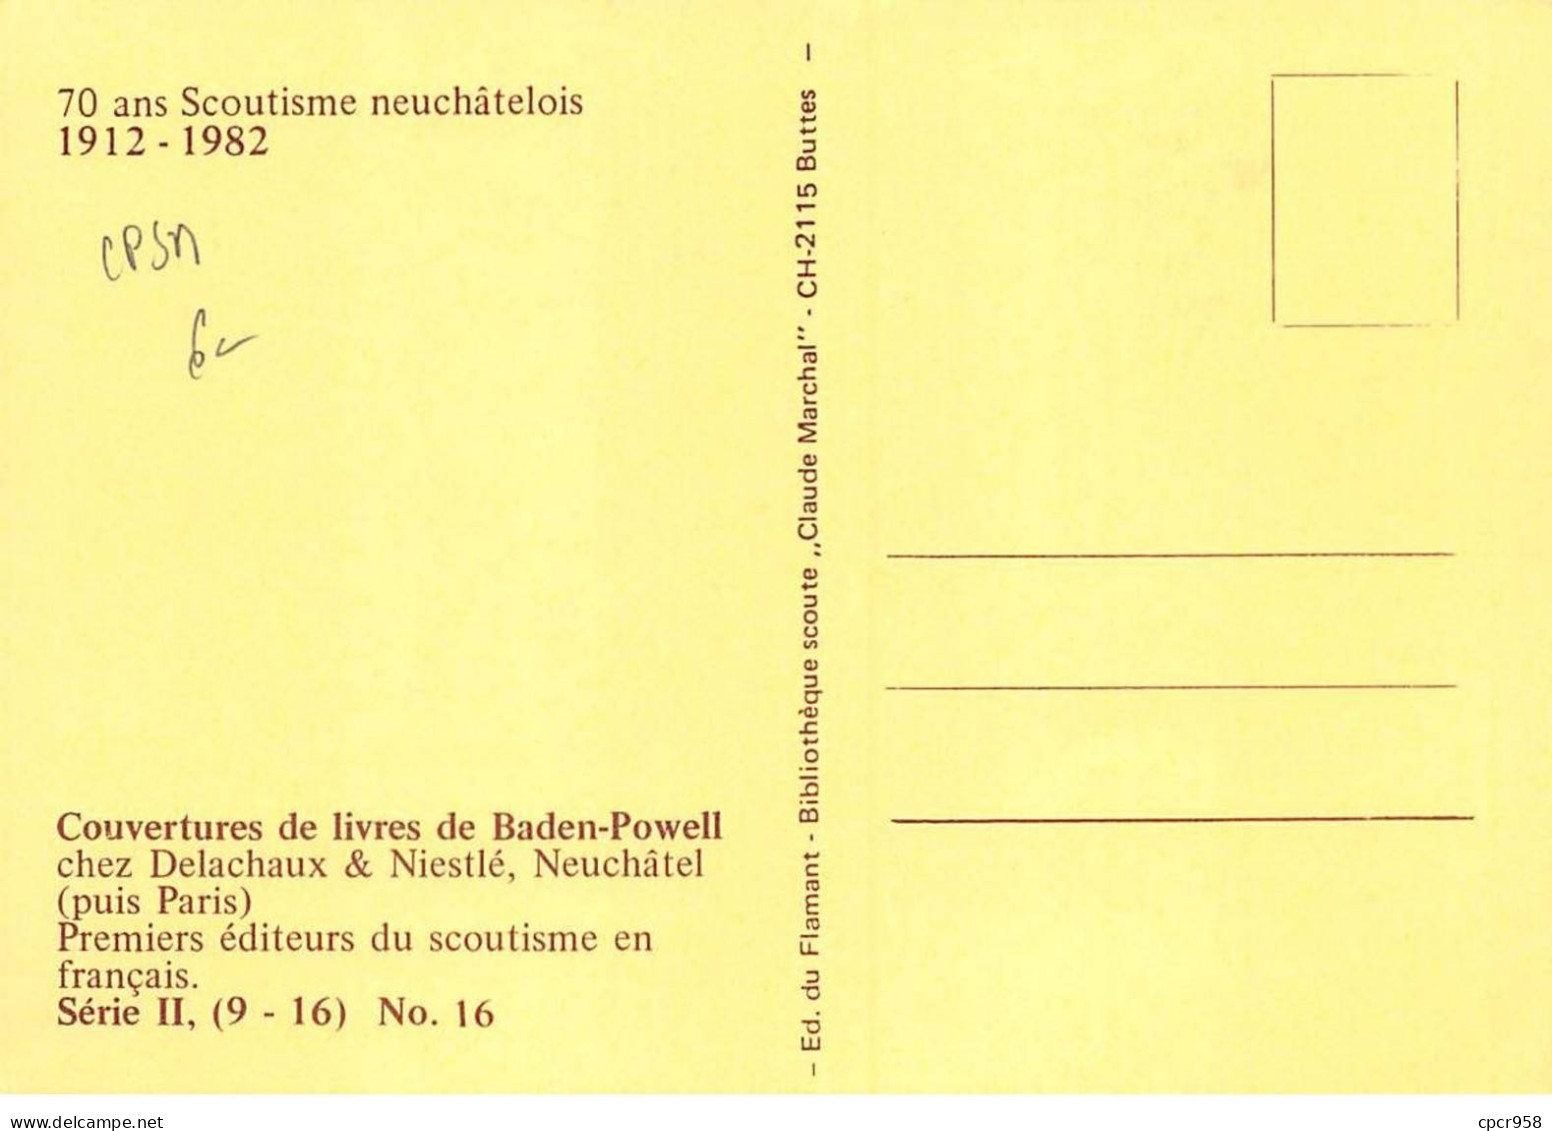 SCOUTISME - SAN36095 - 70 Ans Scoutisme Neuchâtelois - Couvertures Livres Baden- Série II, (9-16), N°16  - CPSM 15x10 Cm - Scouting